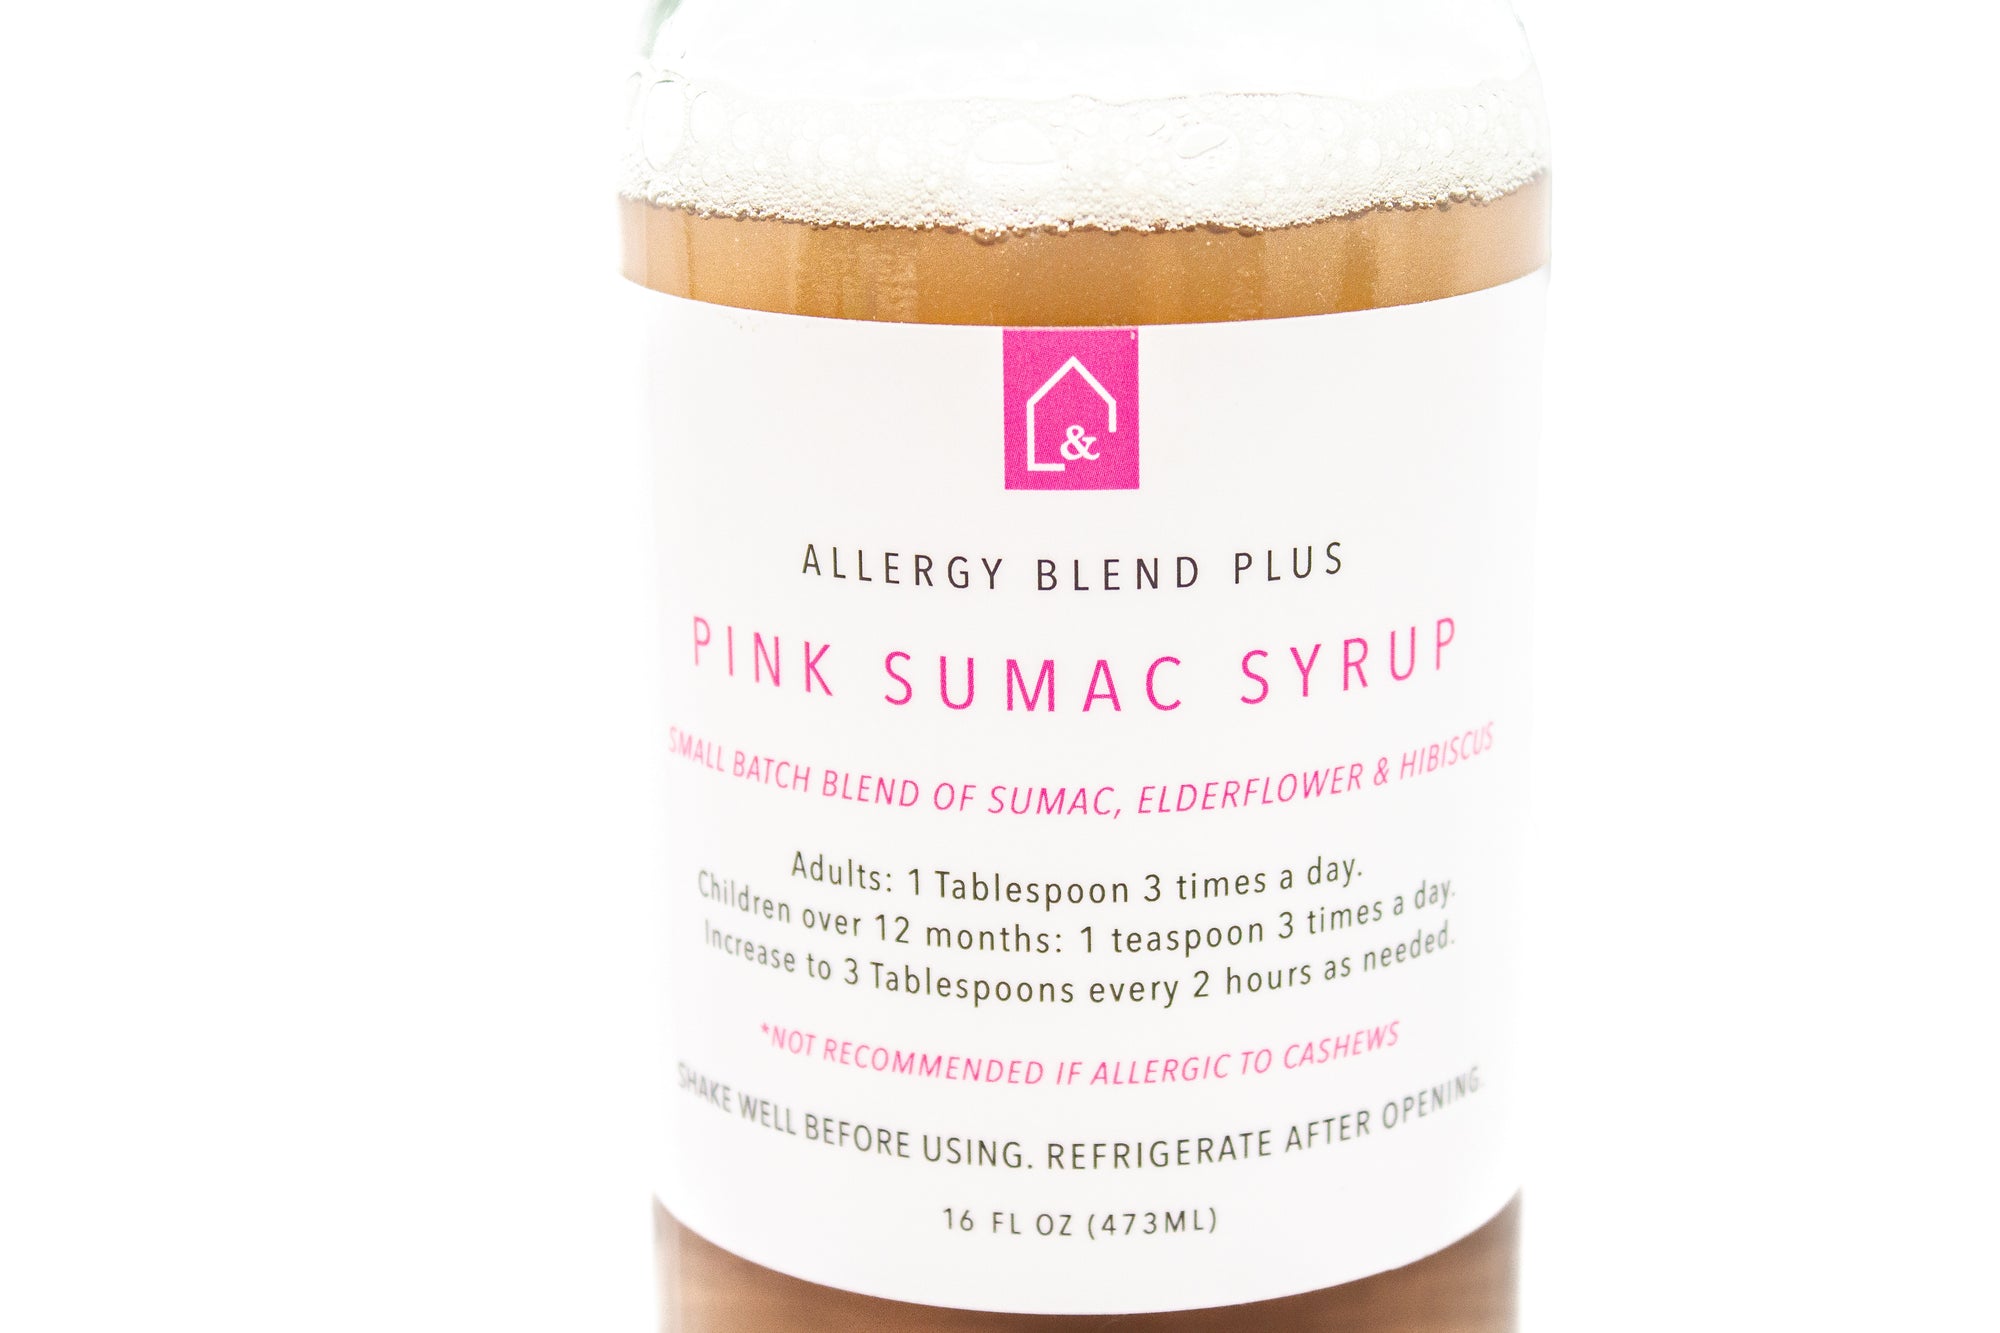 Pink Sumac Syrup